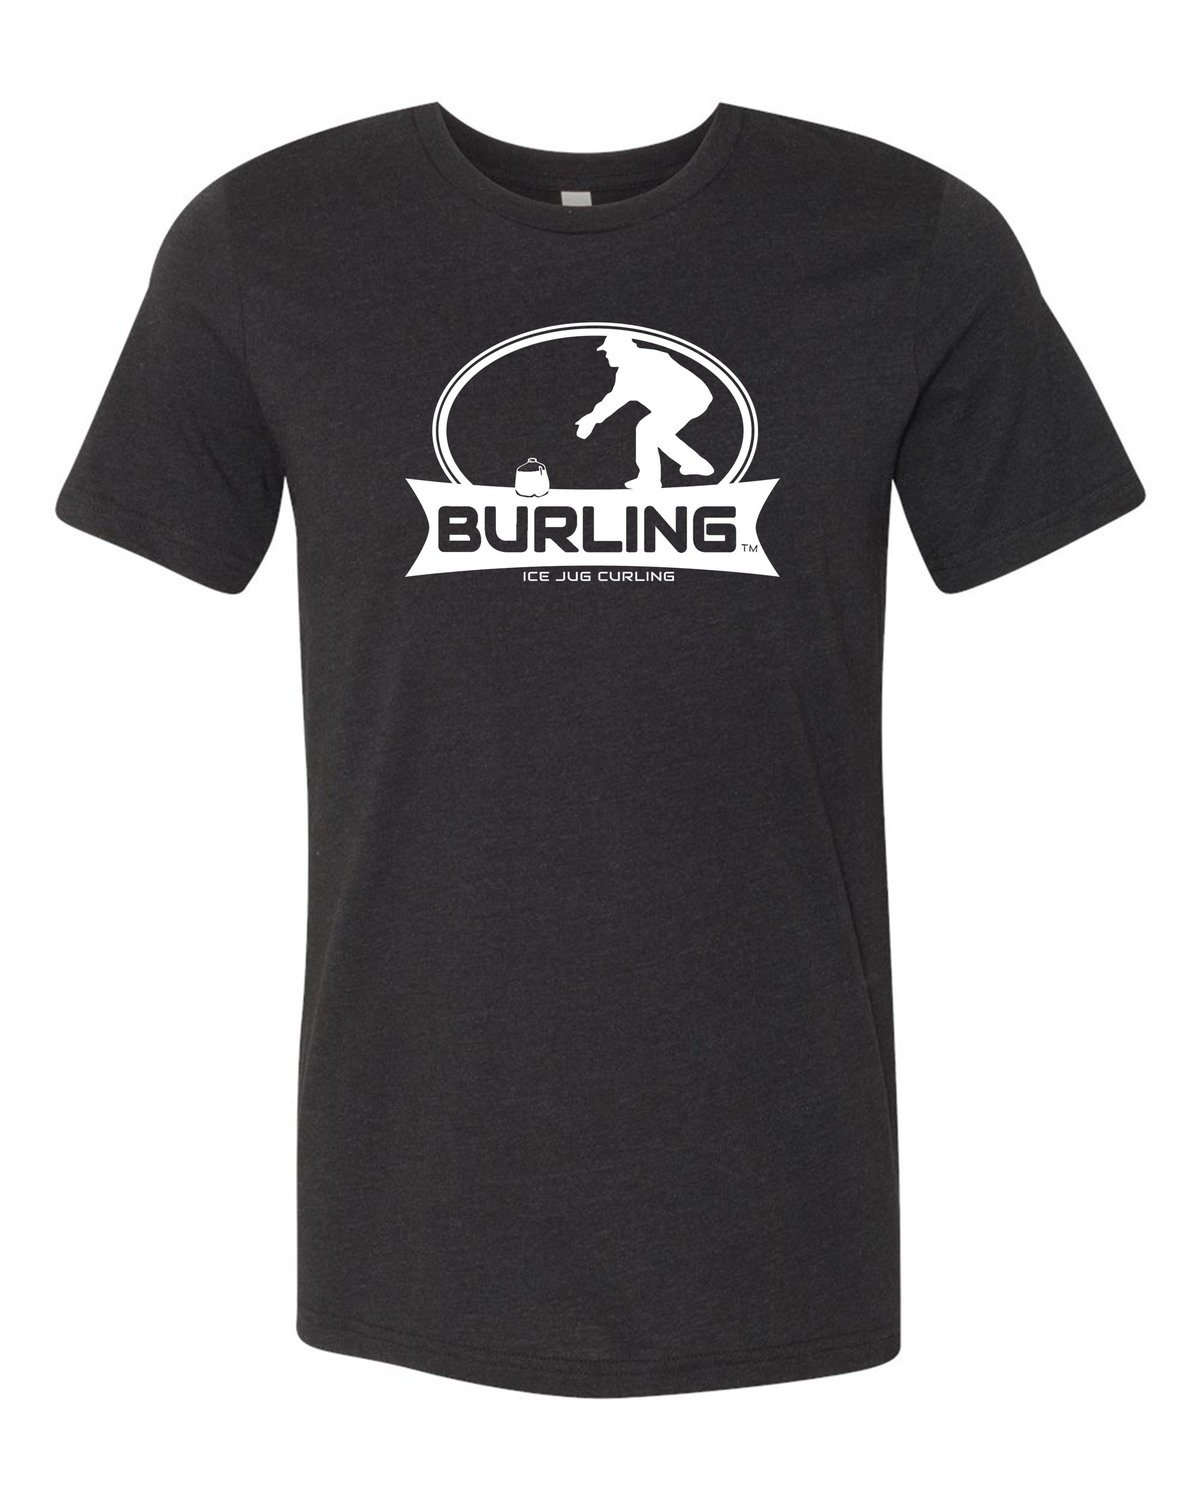 Burling Women's Black T-shirt